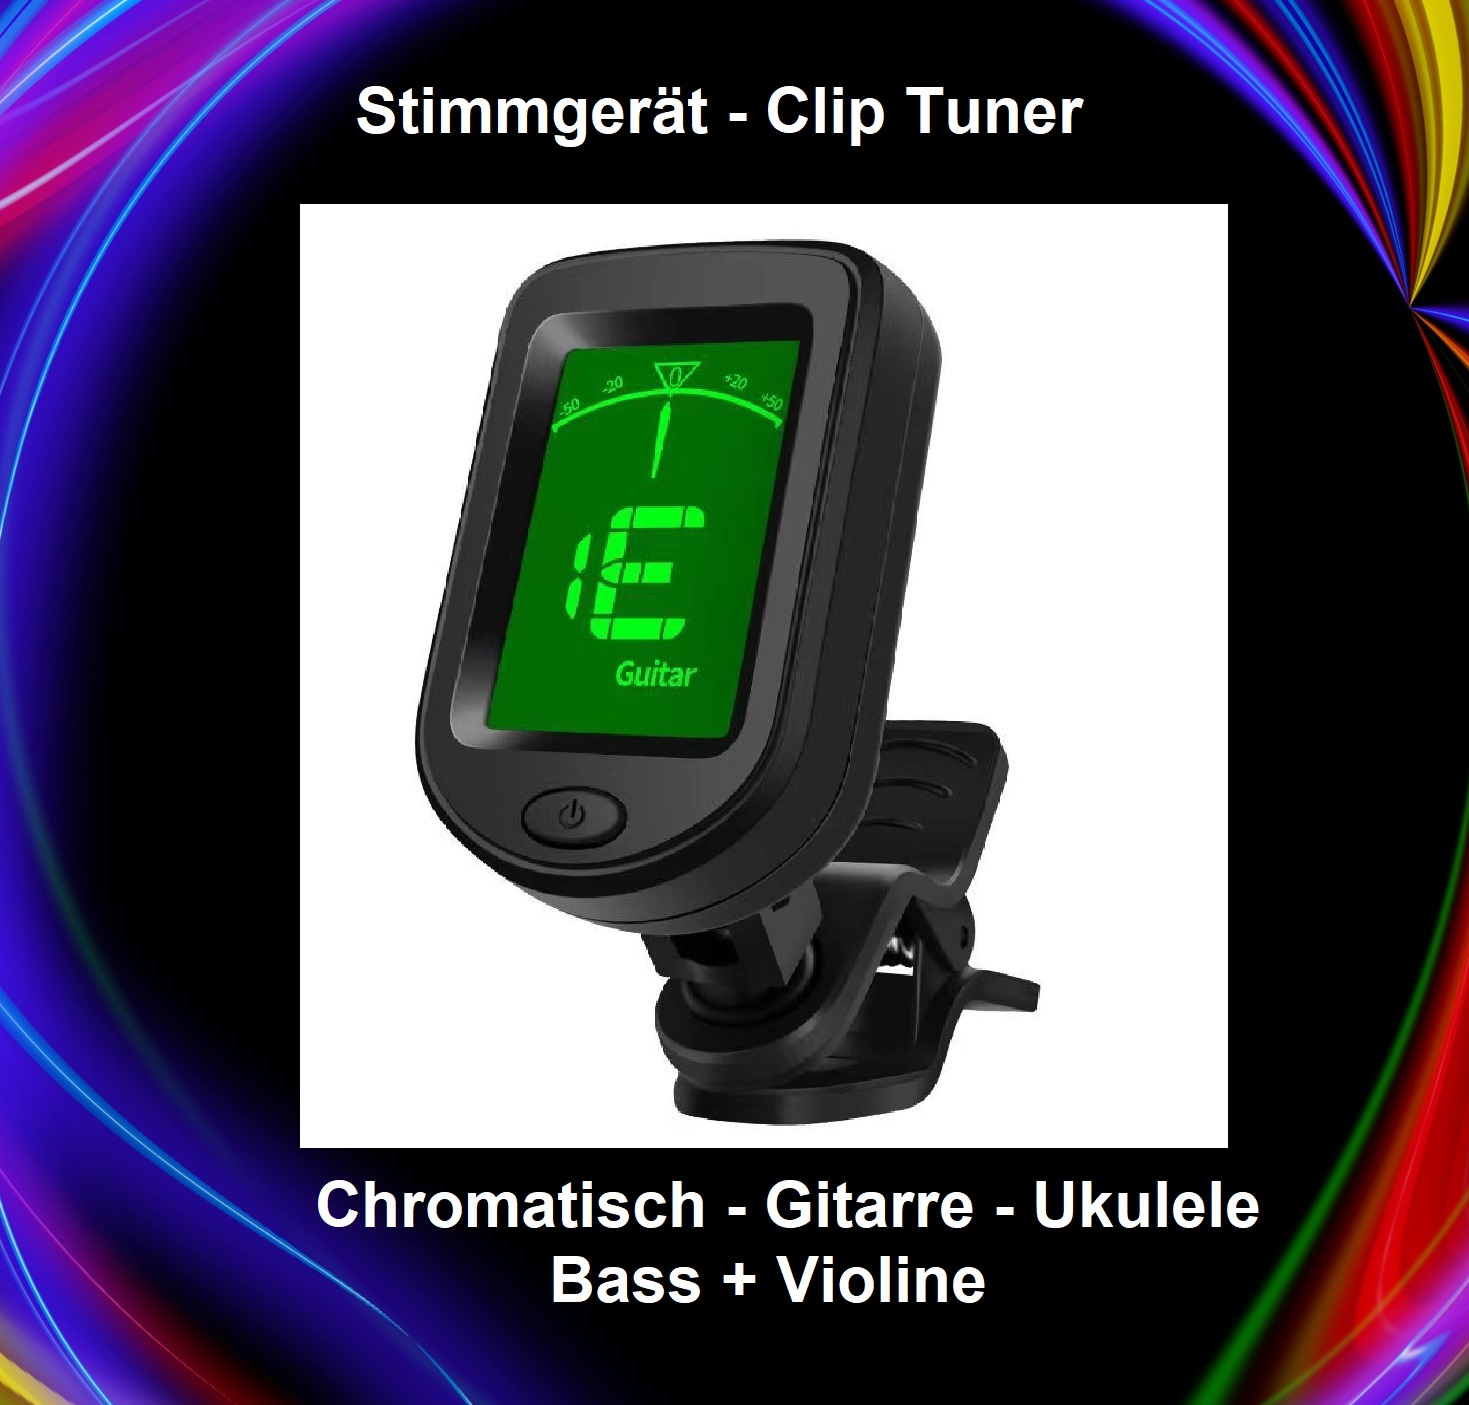 10 x Stimmgeräte - Clip Tuner für: Ukulele - Gitarre - Bass - Violine + Chromatisch 